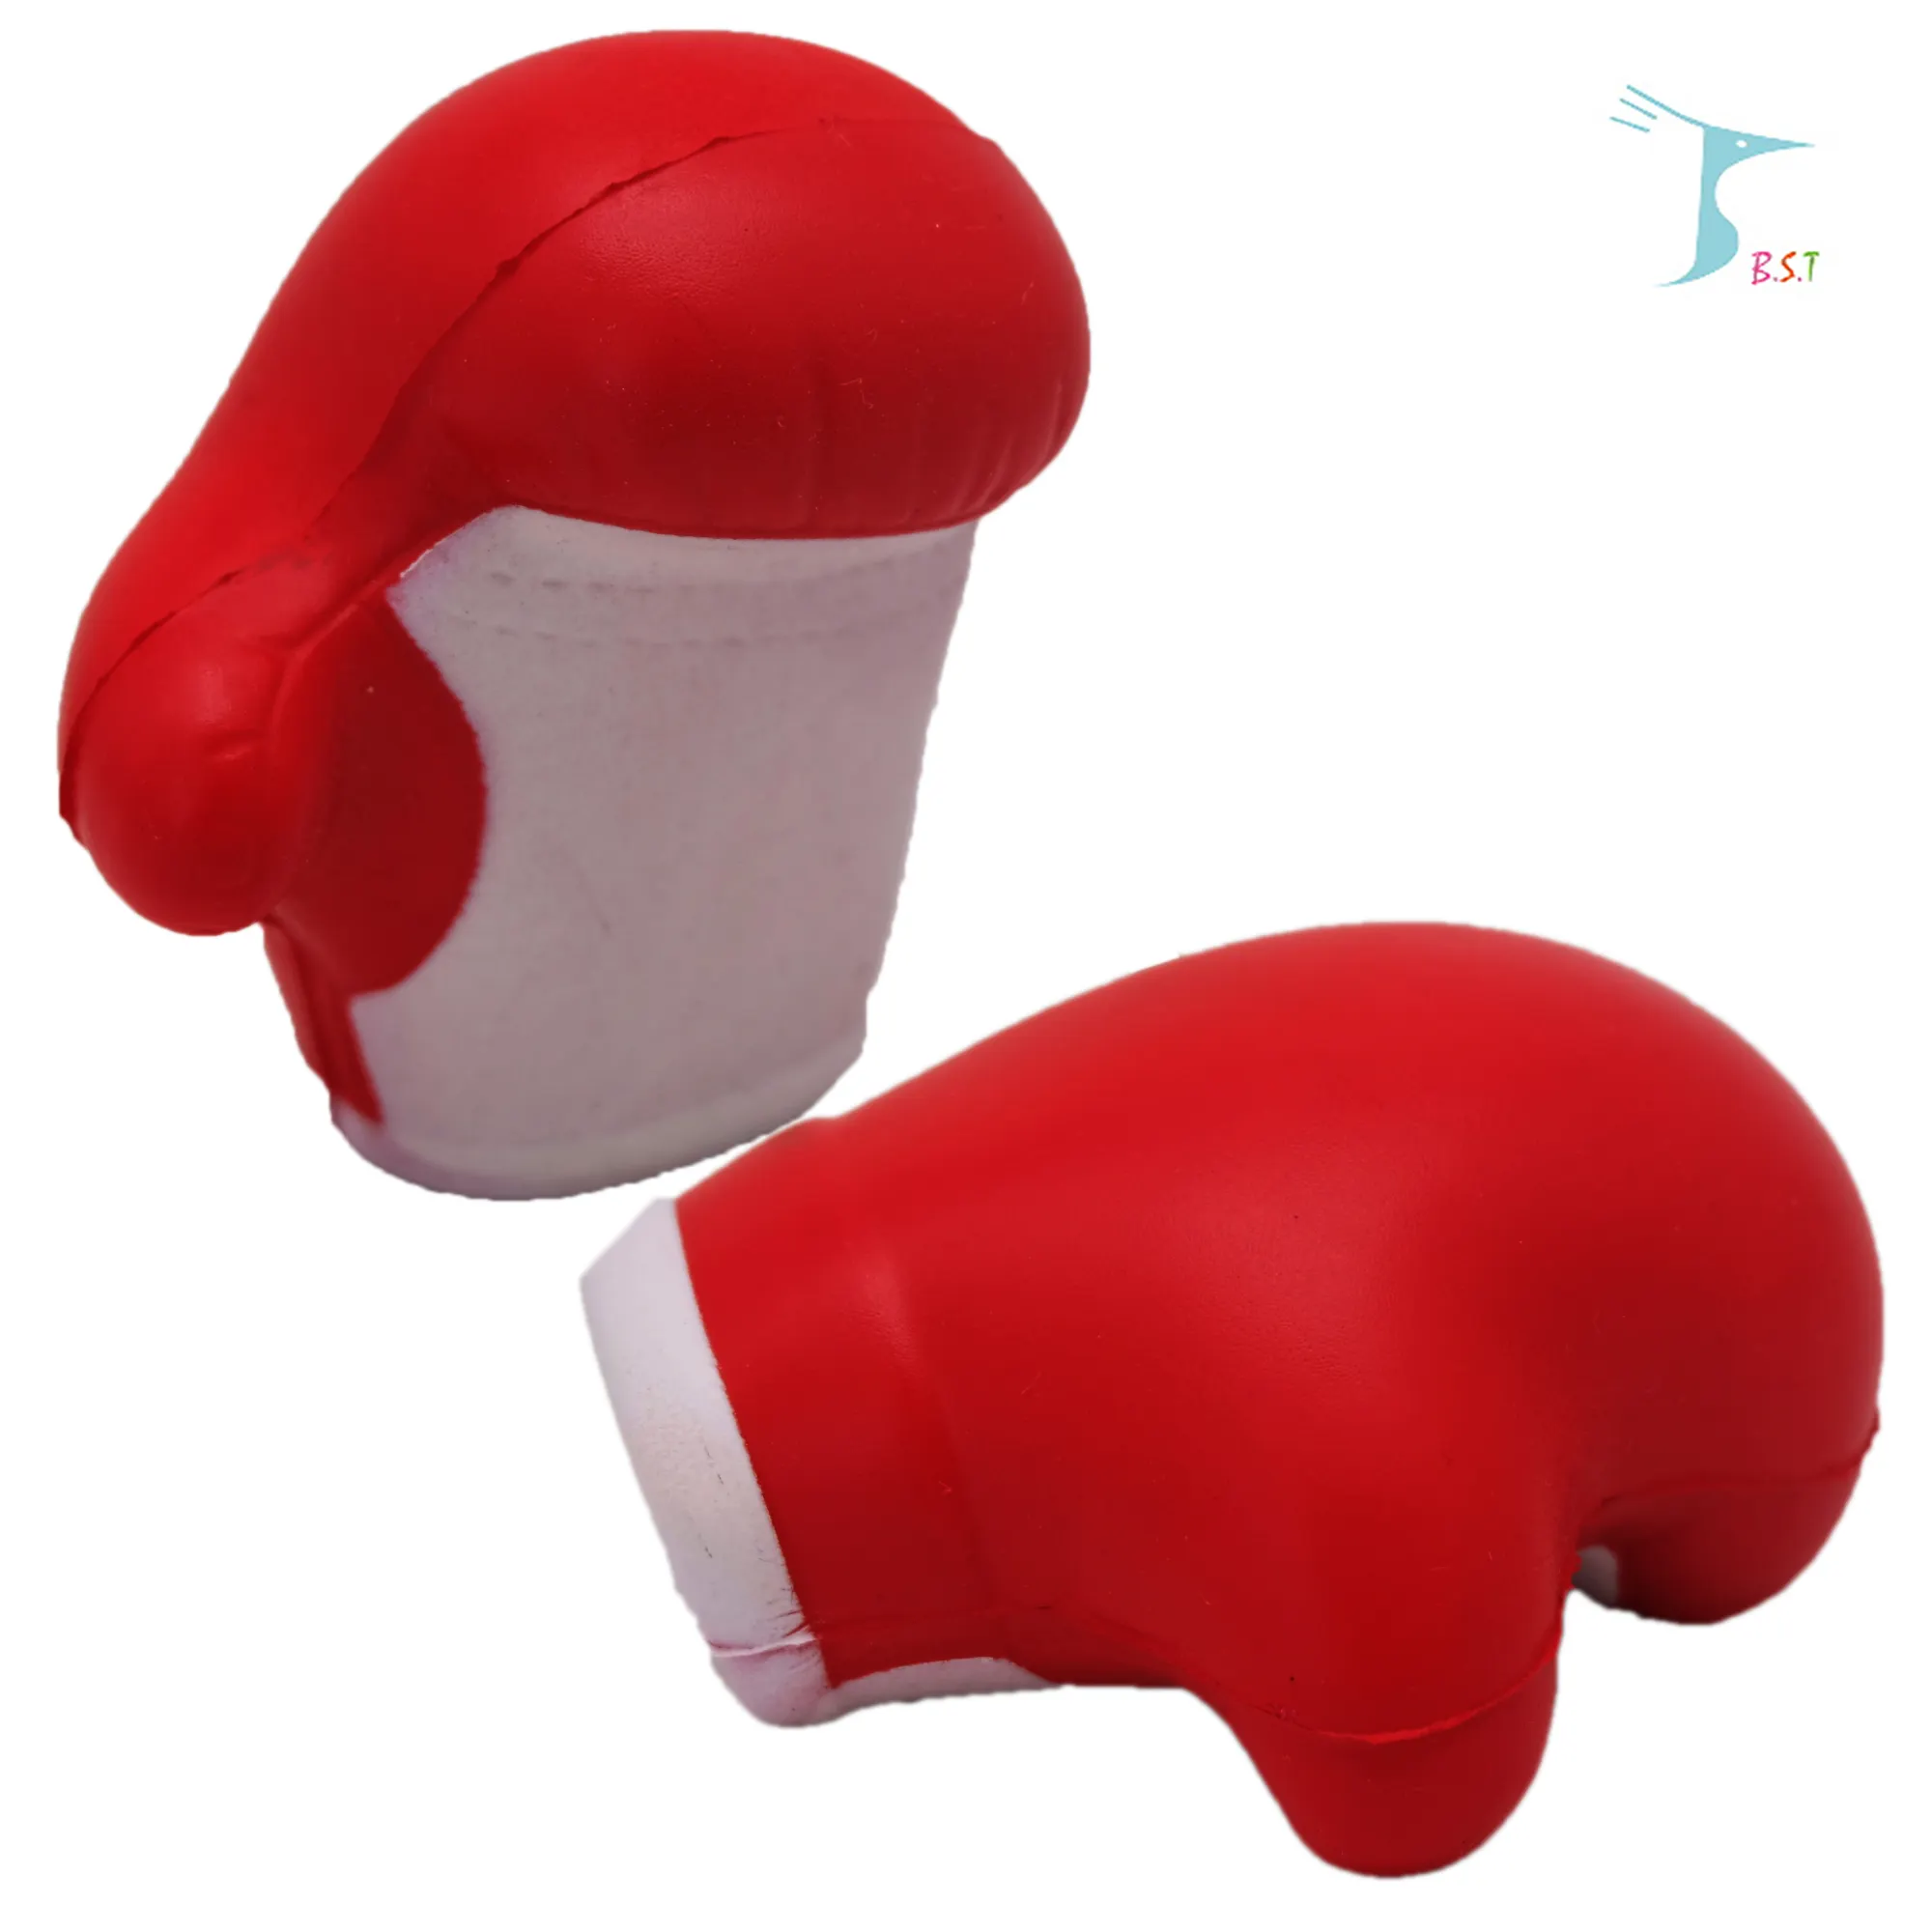 Squeeze pu foam stress boxing gloves toy /Anti-stress Pu foam stress boxing gloves shape toy